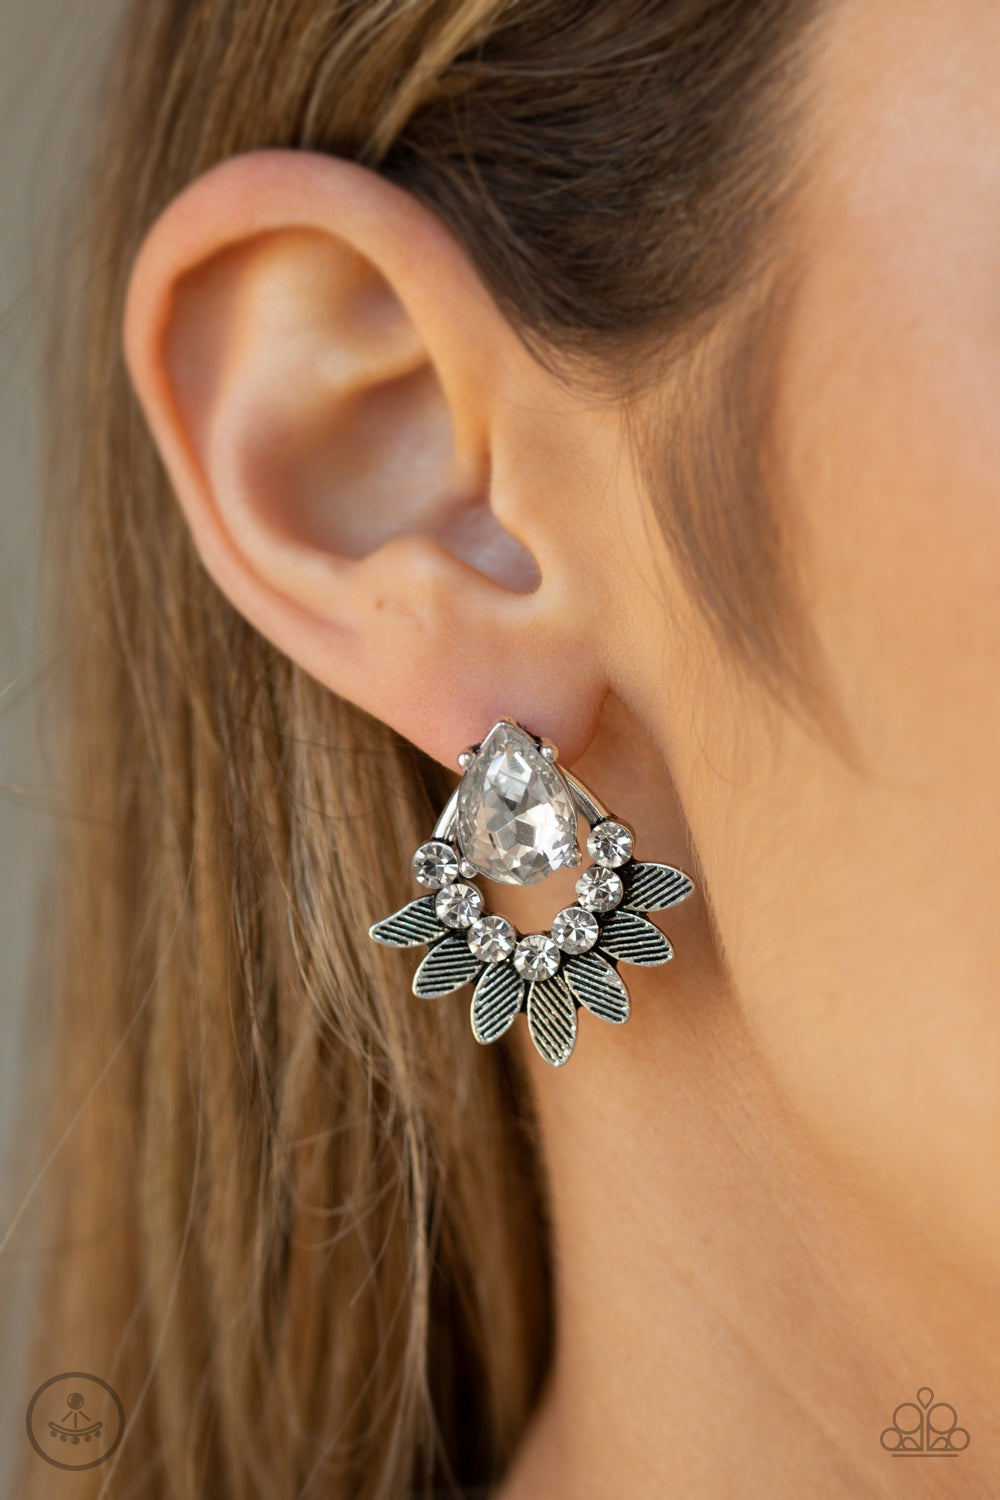 Crystal Canopy - White Jacket Stud Earrings - Shine With Aloha, LLC